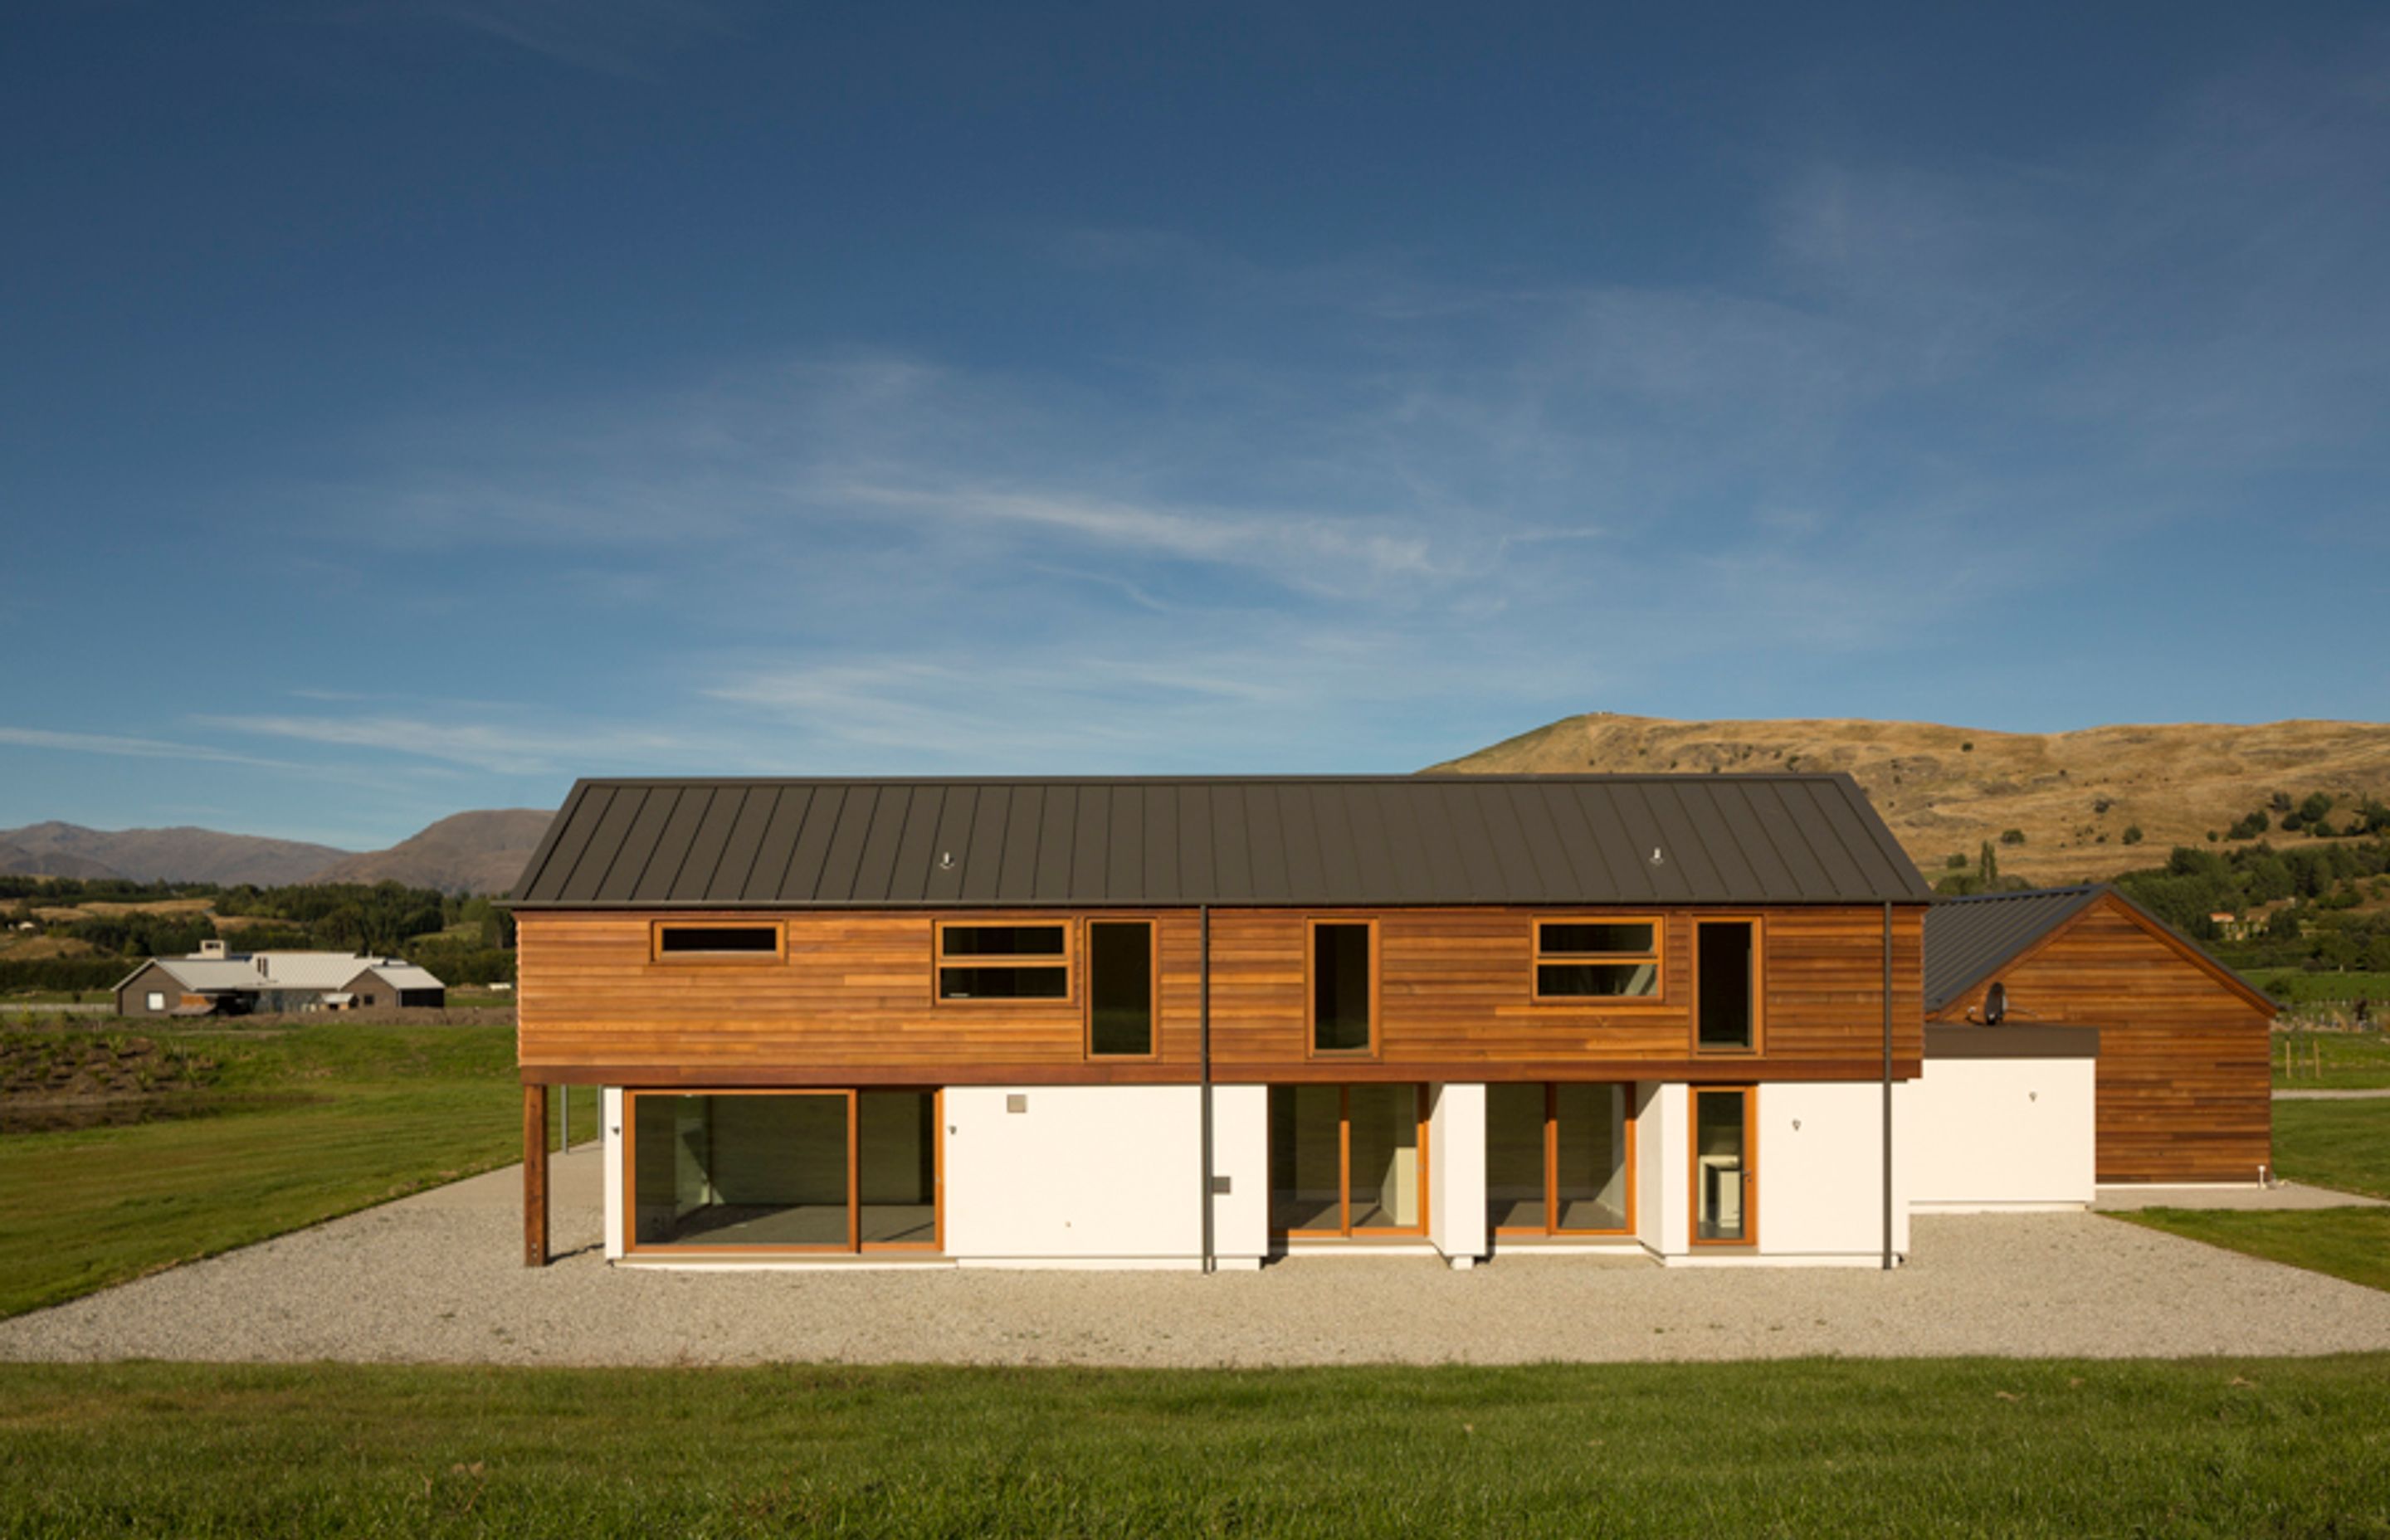 Hawthorn "Contemporary Farm" House